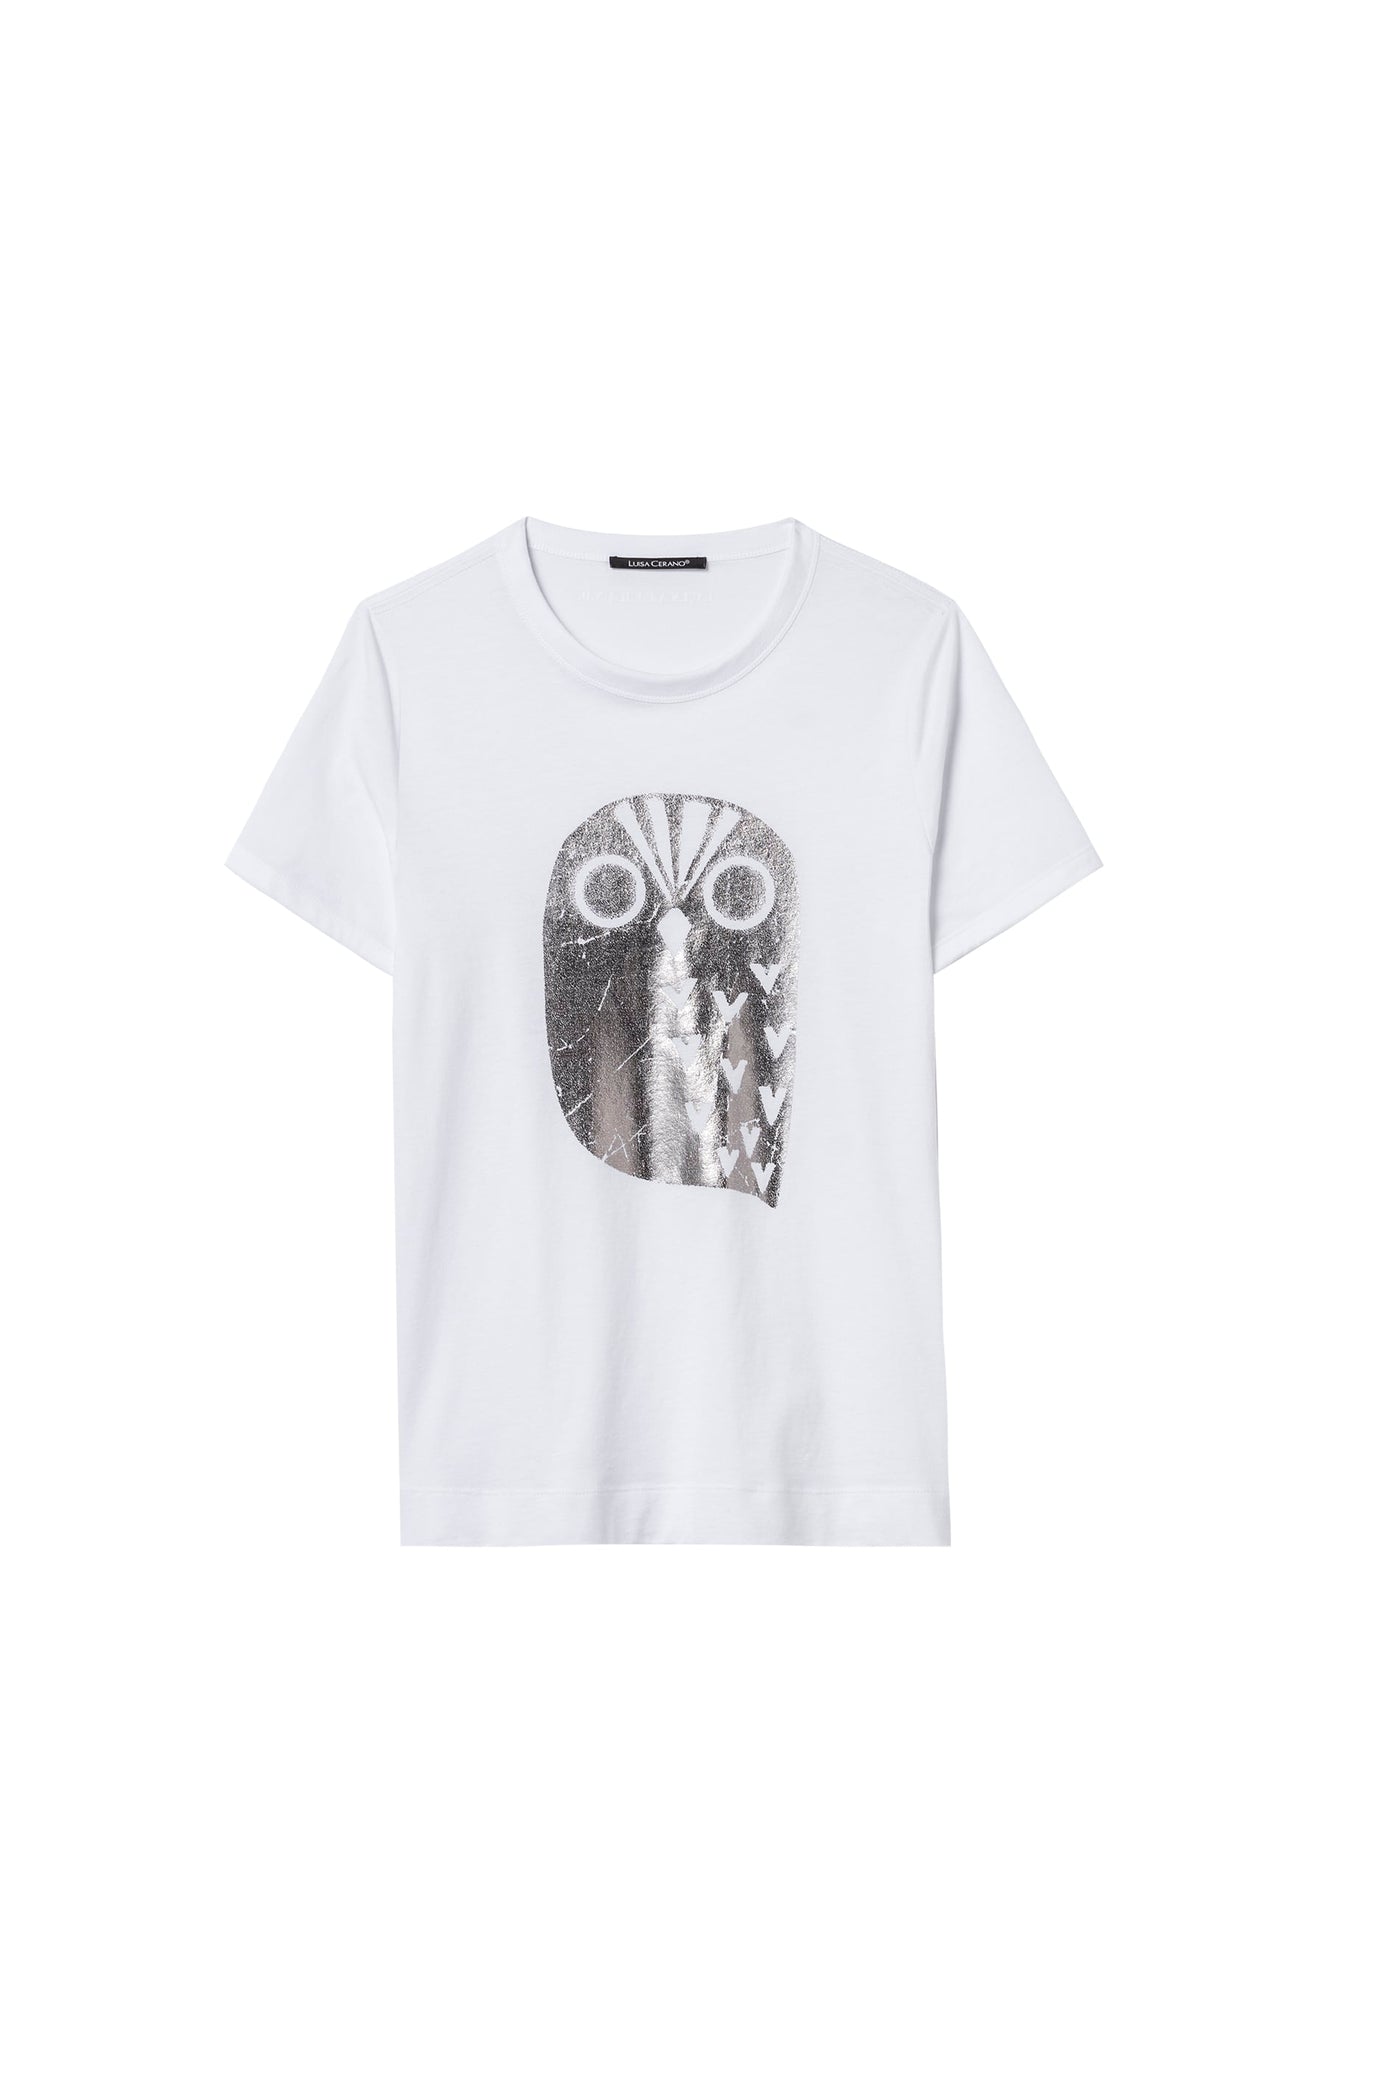 Luisa Cerano T-shirt Owl | White